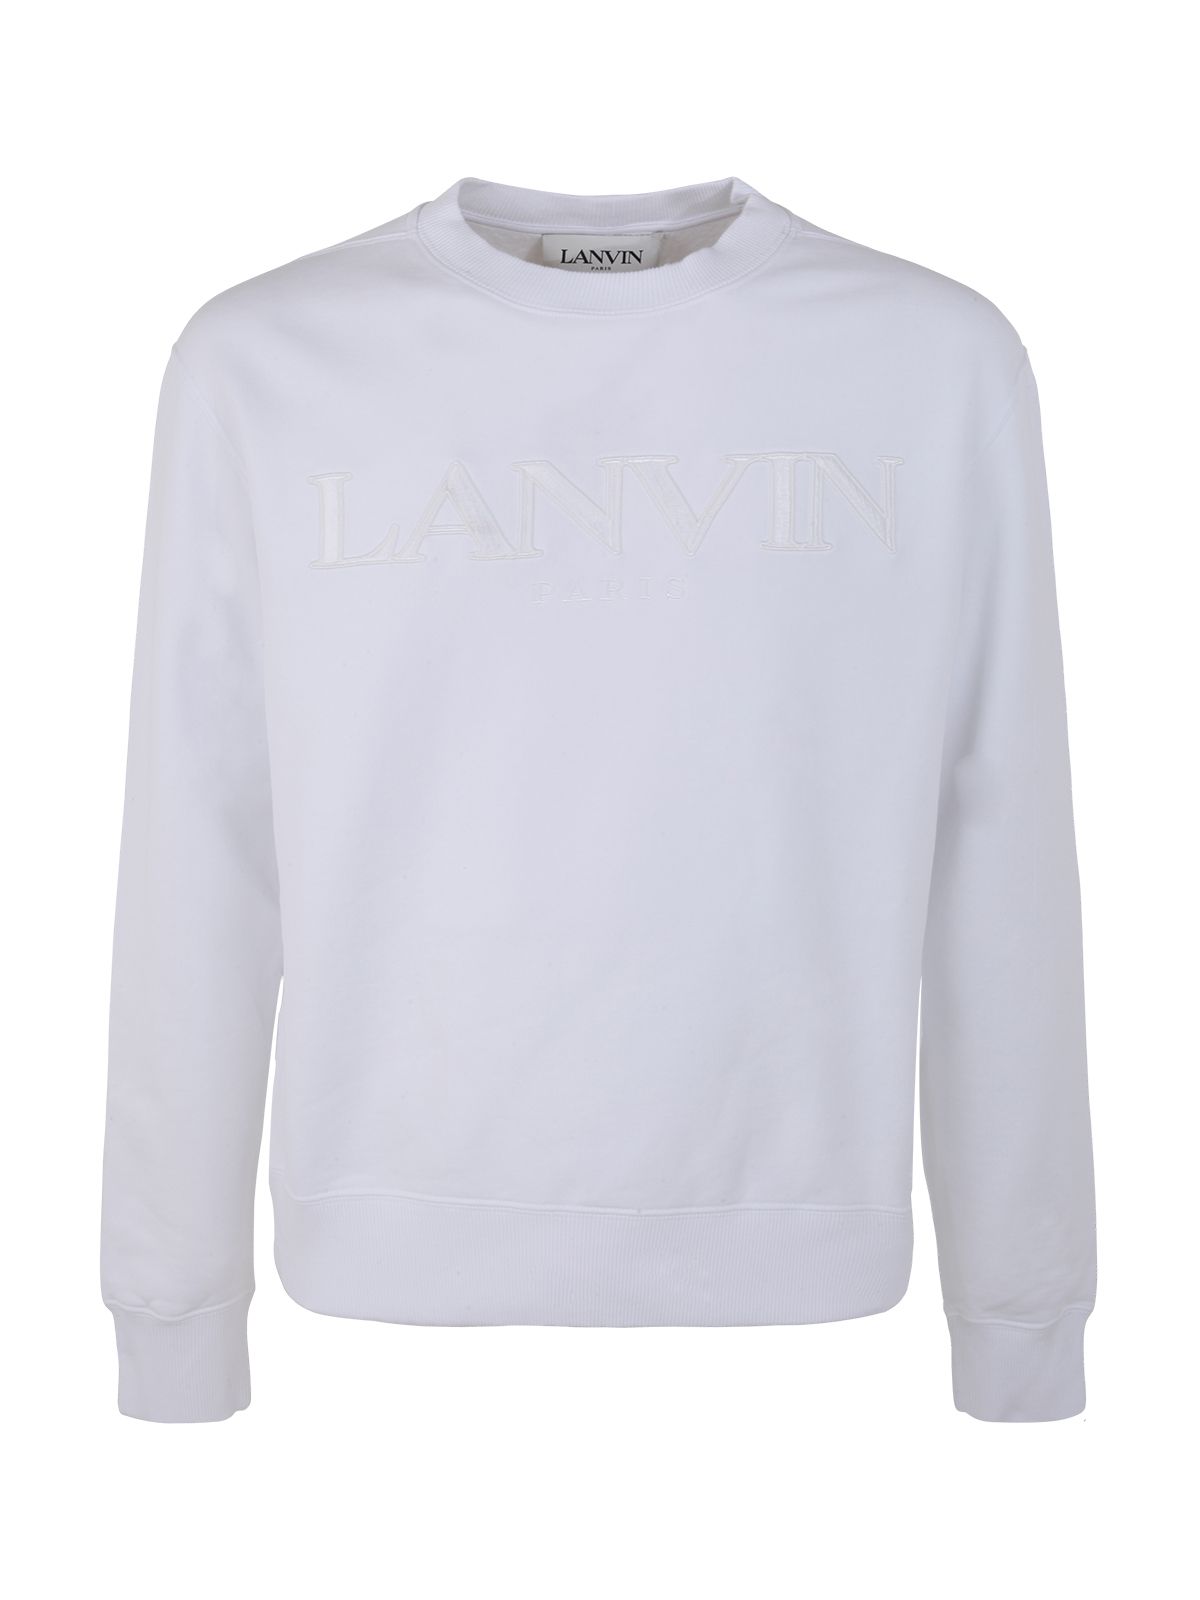 Shop Lanvin Crew Neck Embroidered Sweatshirt